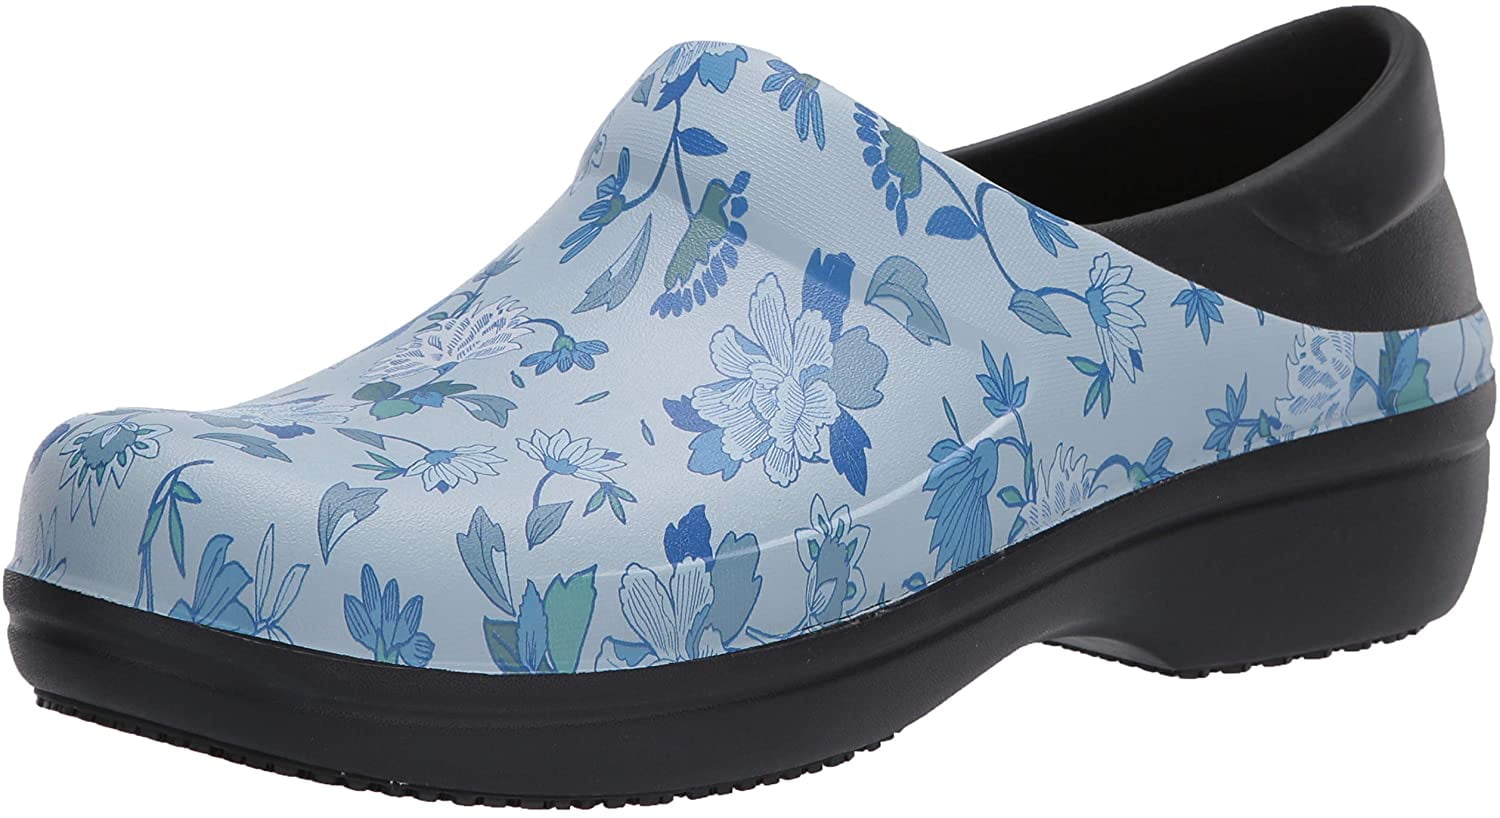 blue slip resistant shoes